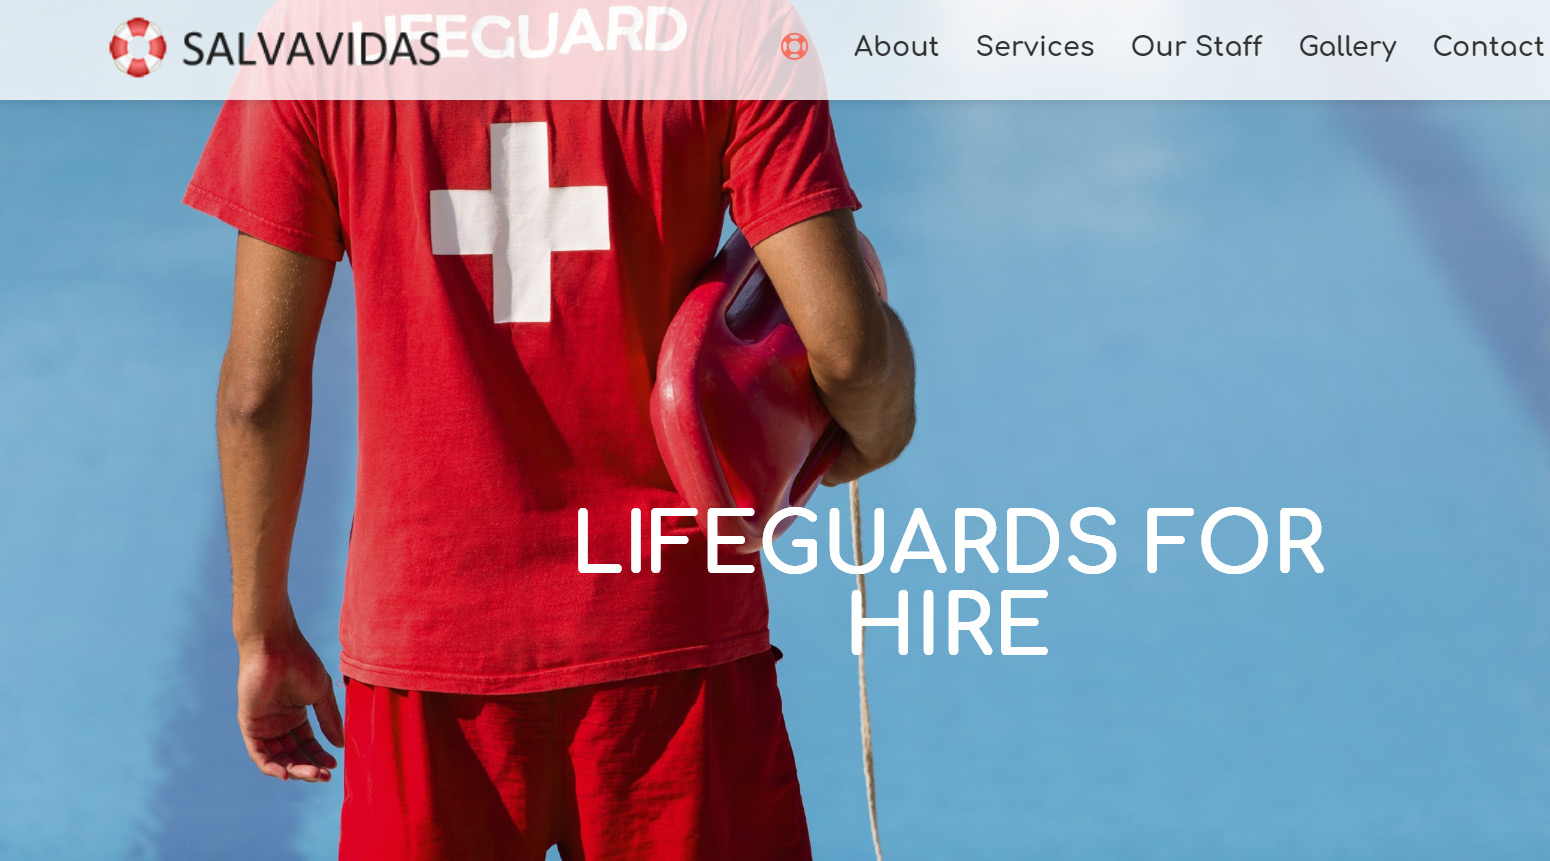 Salvavidas Lifeguards for hire 